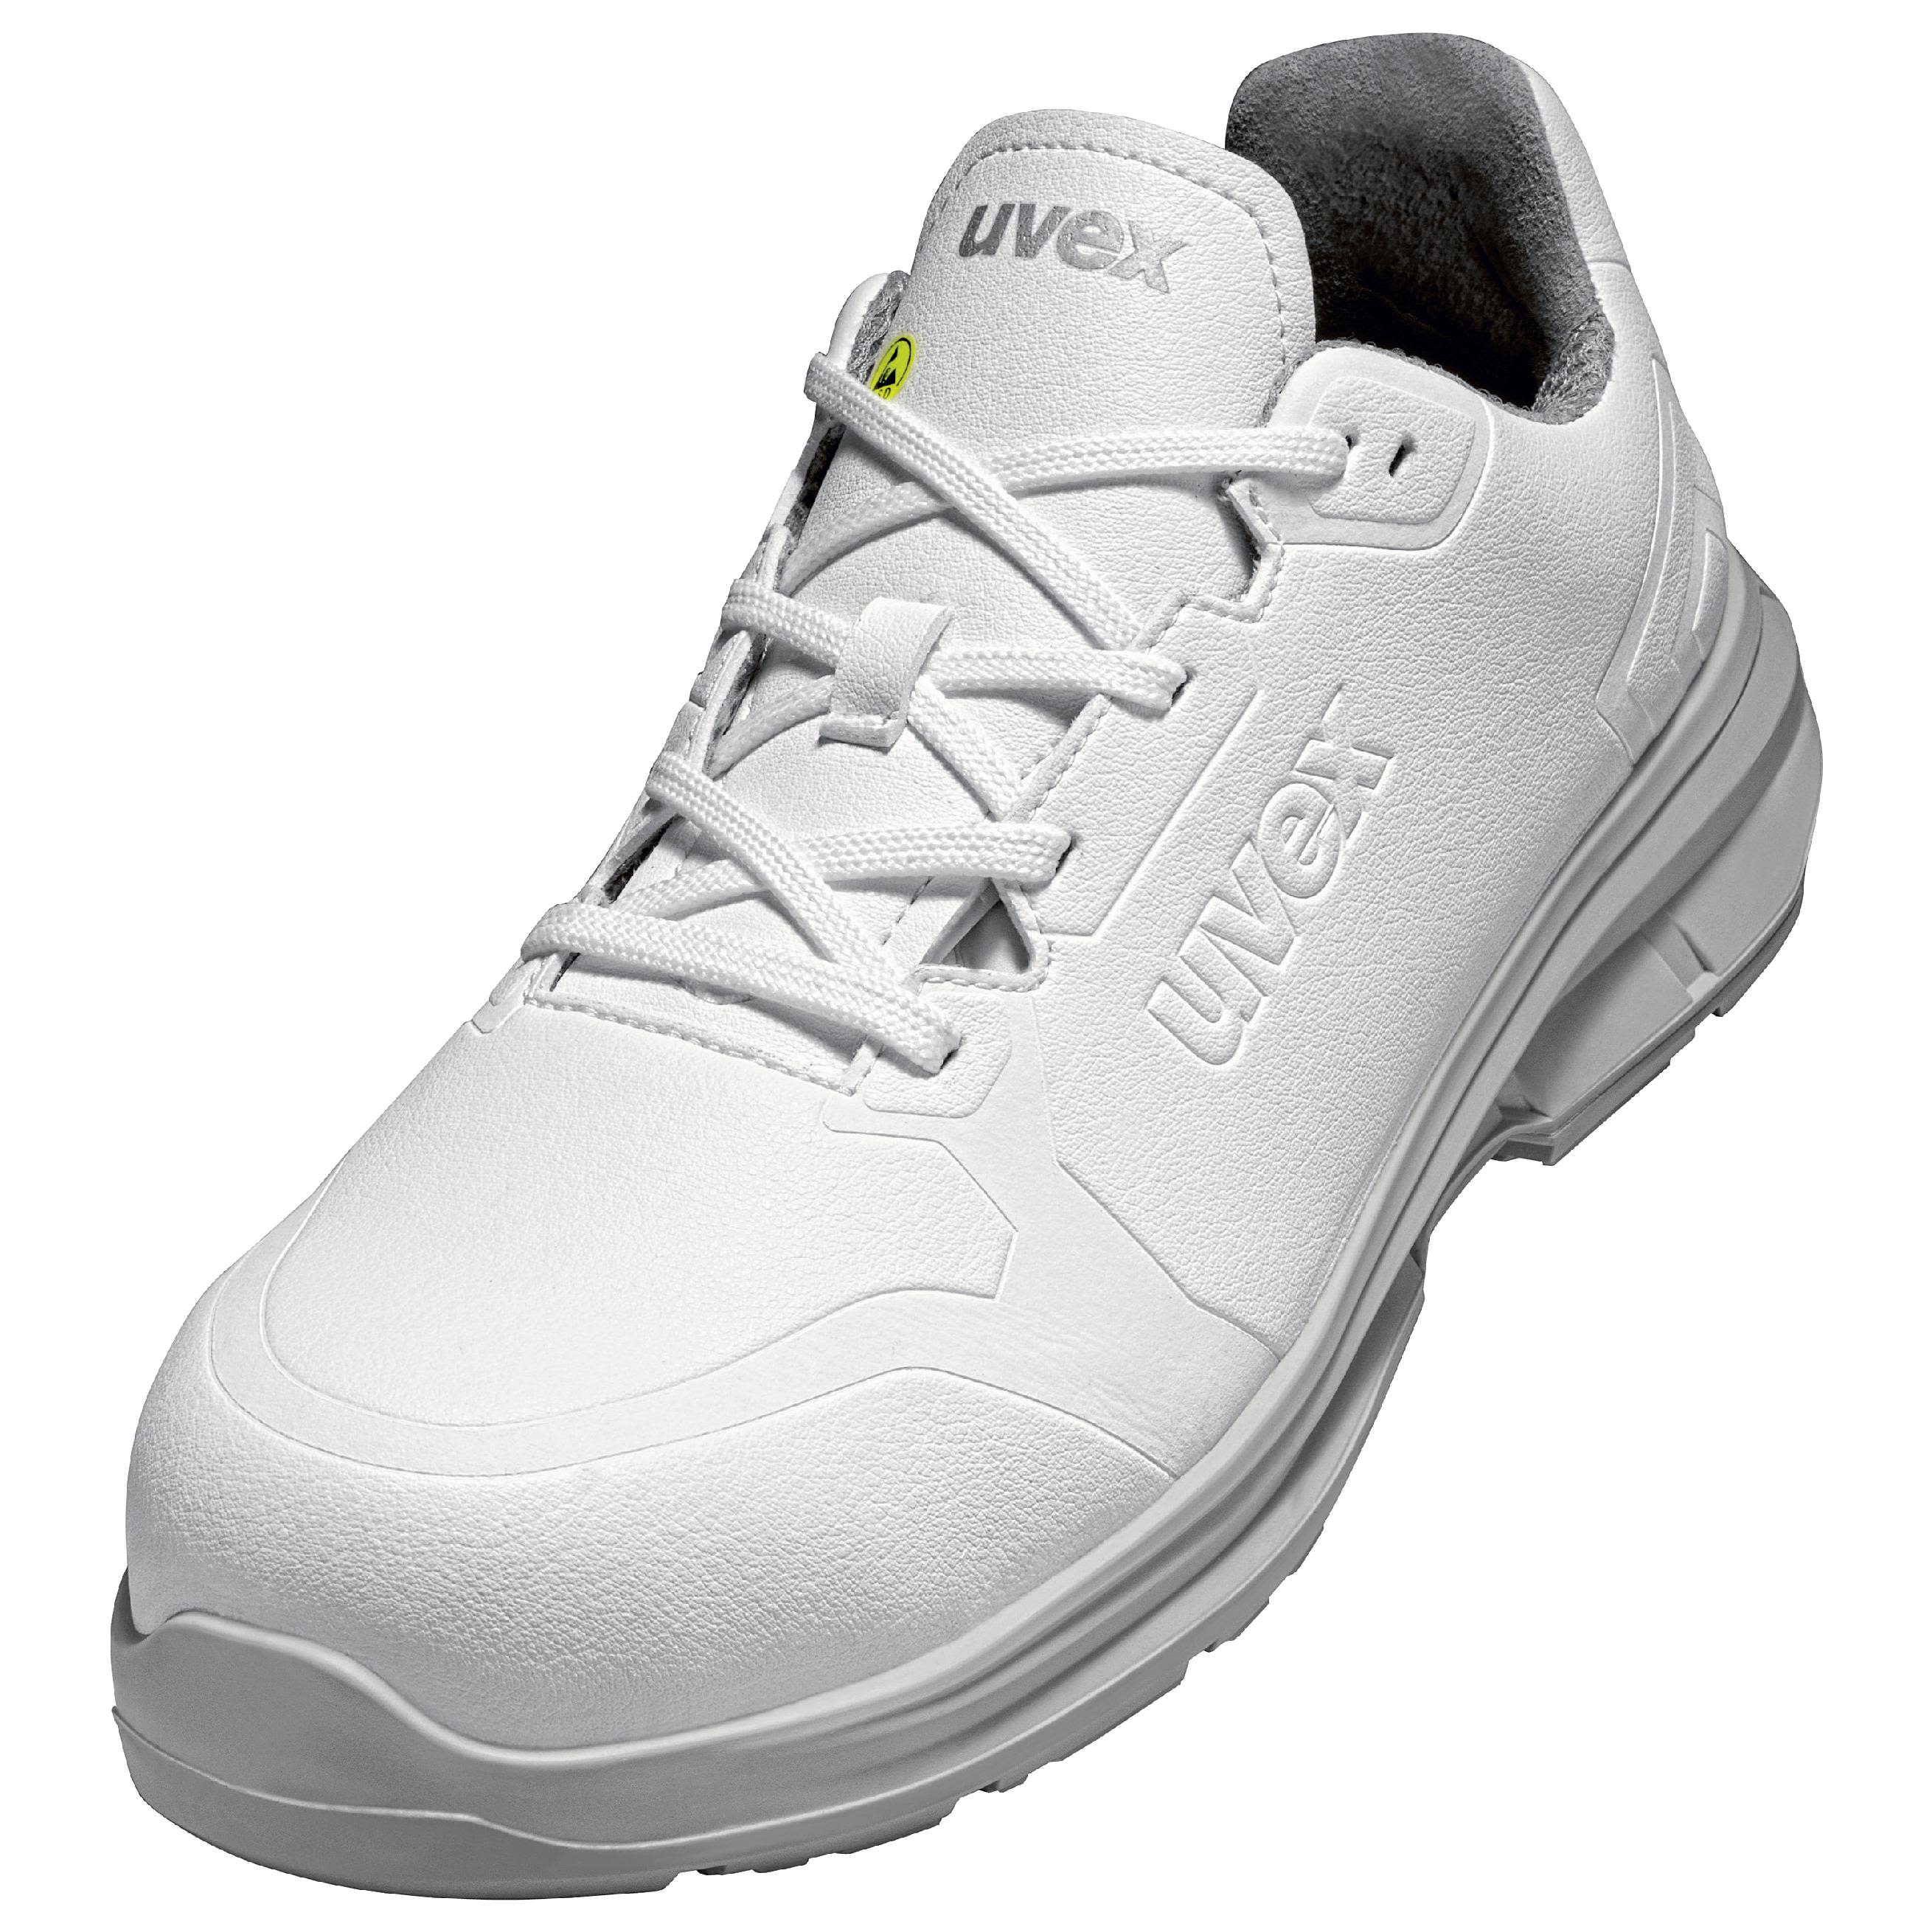 Zapatos de seguridad Unisex Uvex de color Blanco, talla 36, S3 SRC